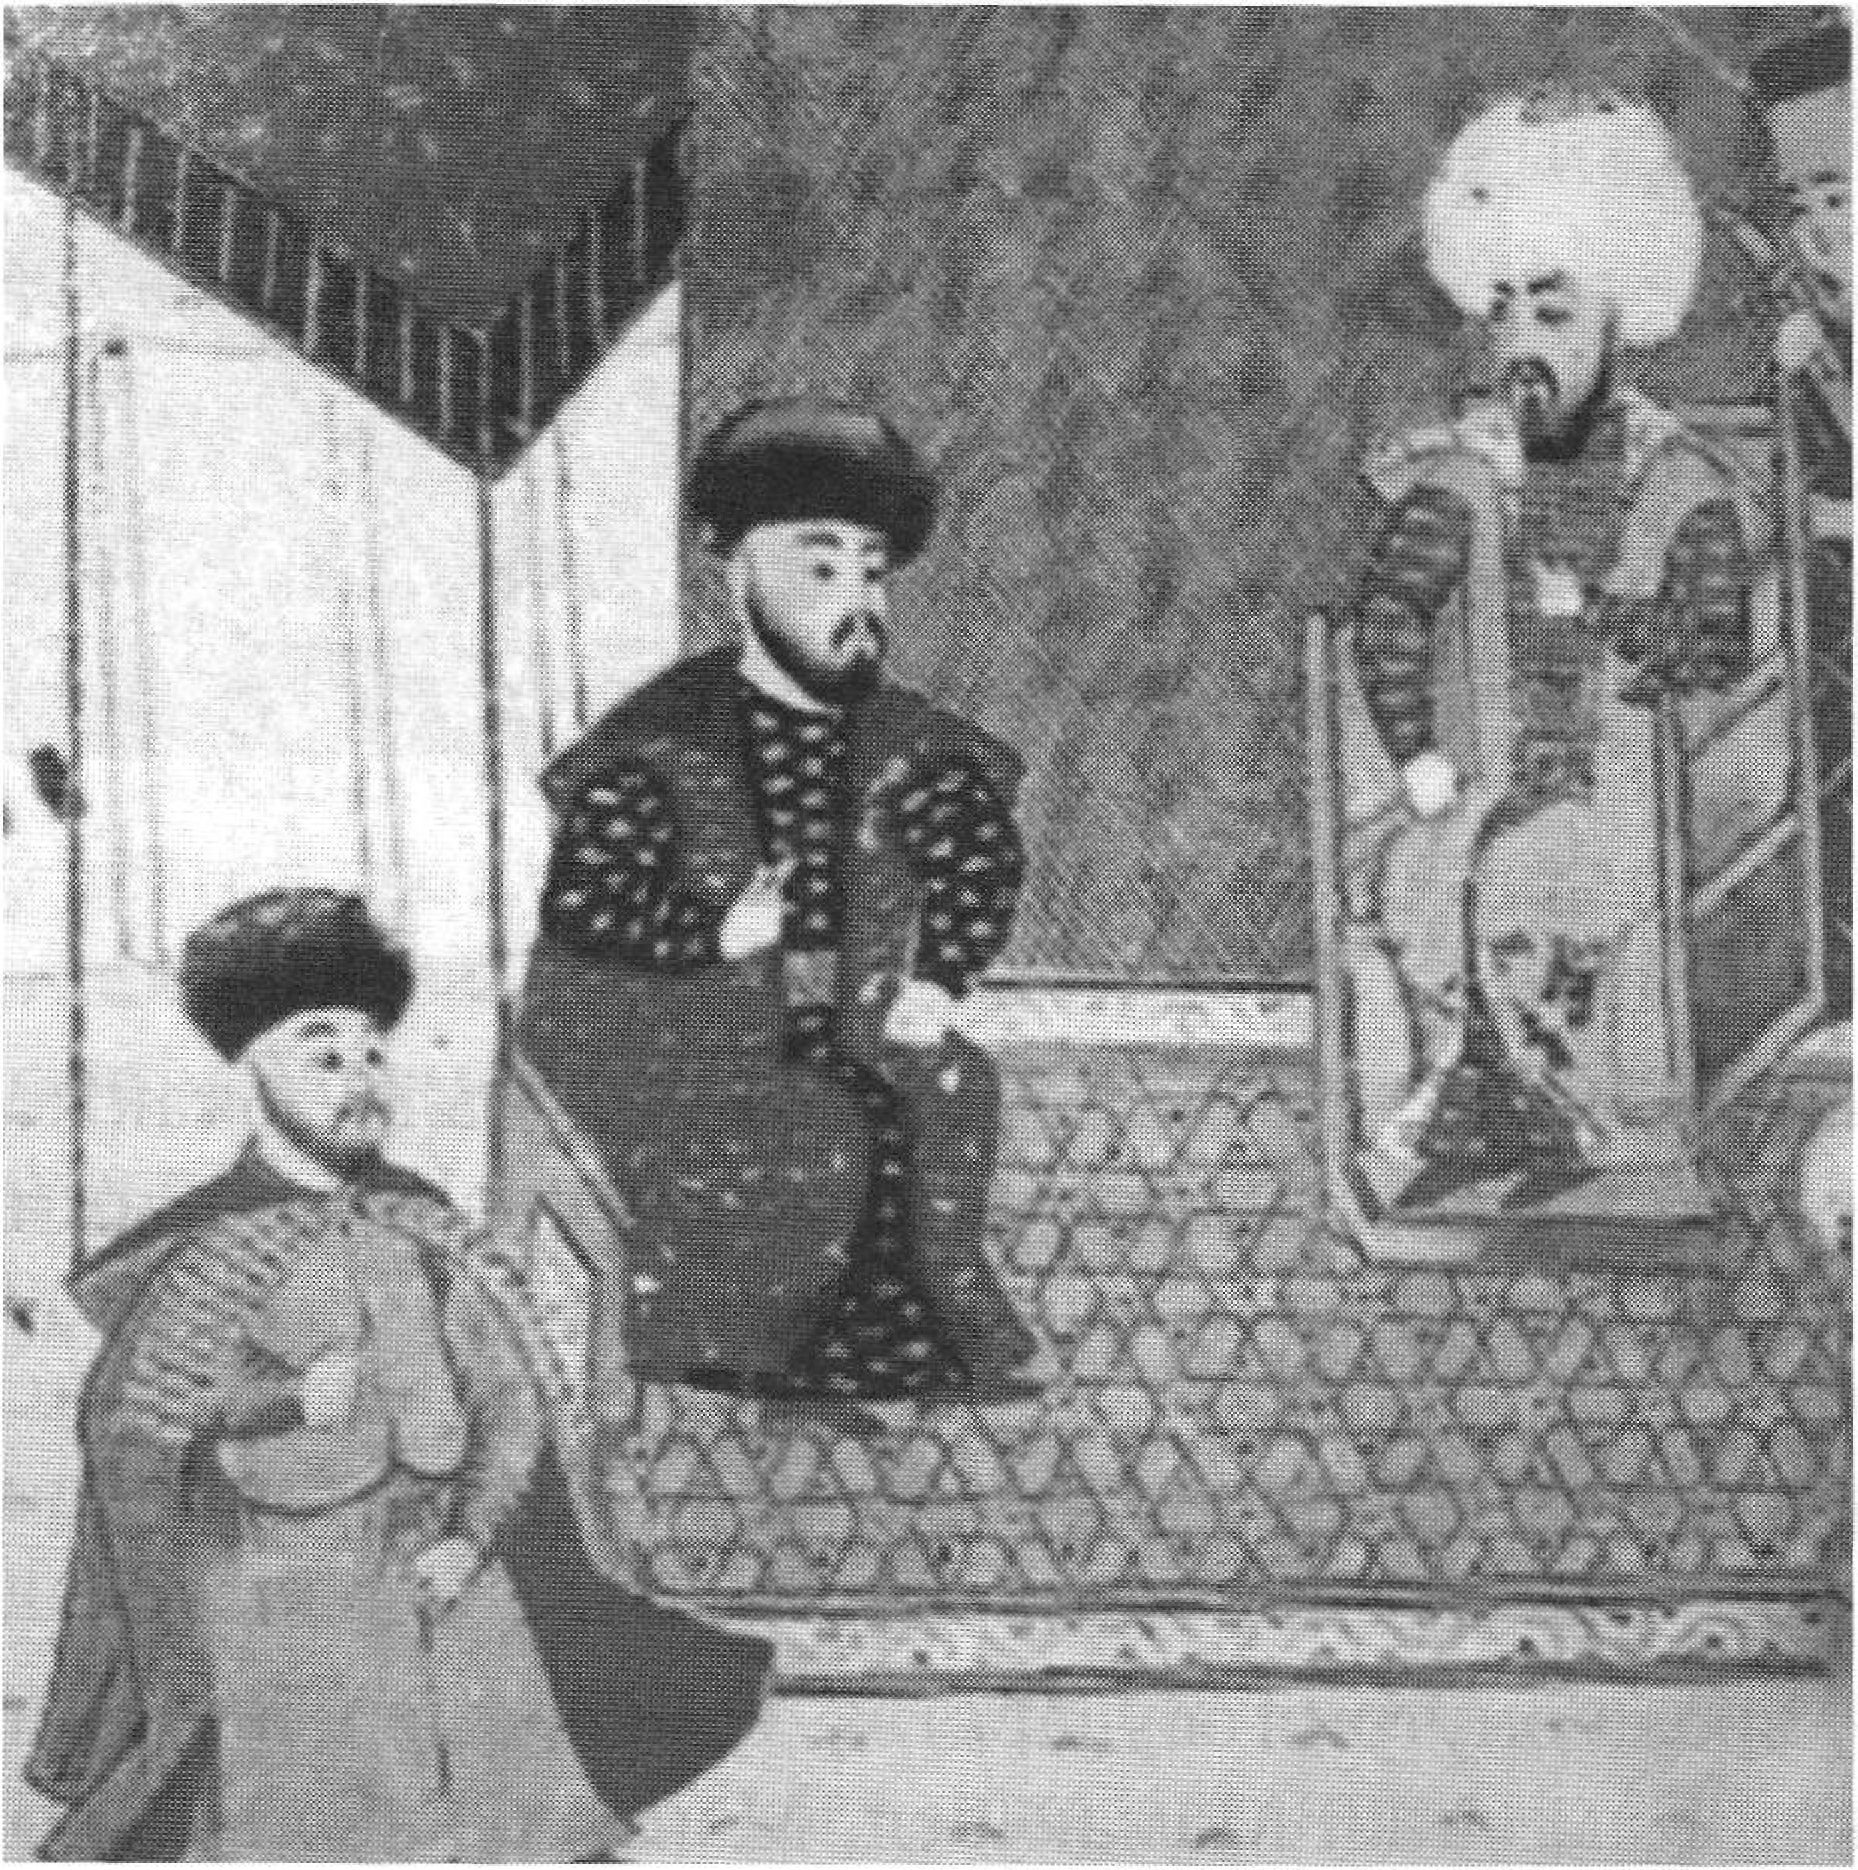 Менгли-Гирей I (в центре) со своим сыном Мехмед-Гиреем (слева) и султаном Баязидом II. Журнал Къасевет, 2010, № 37